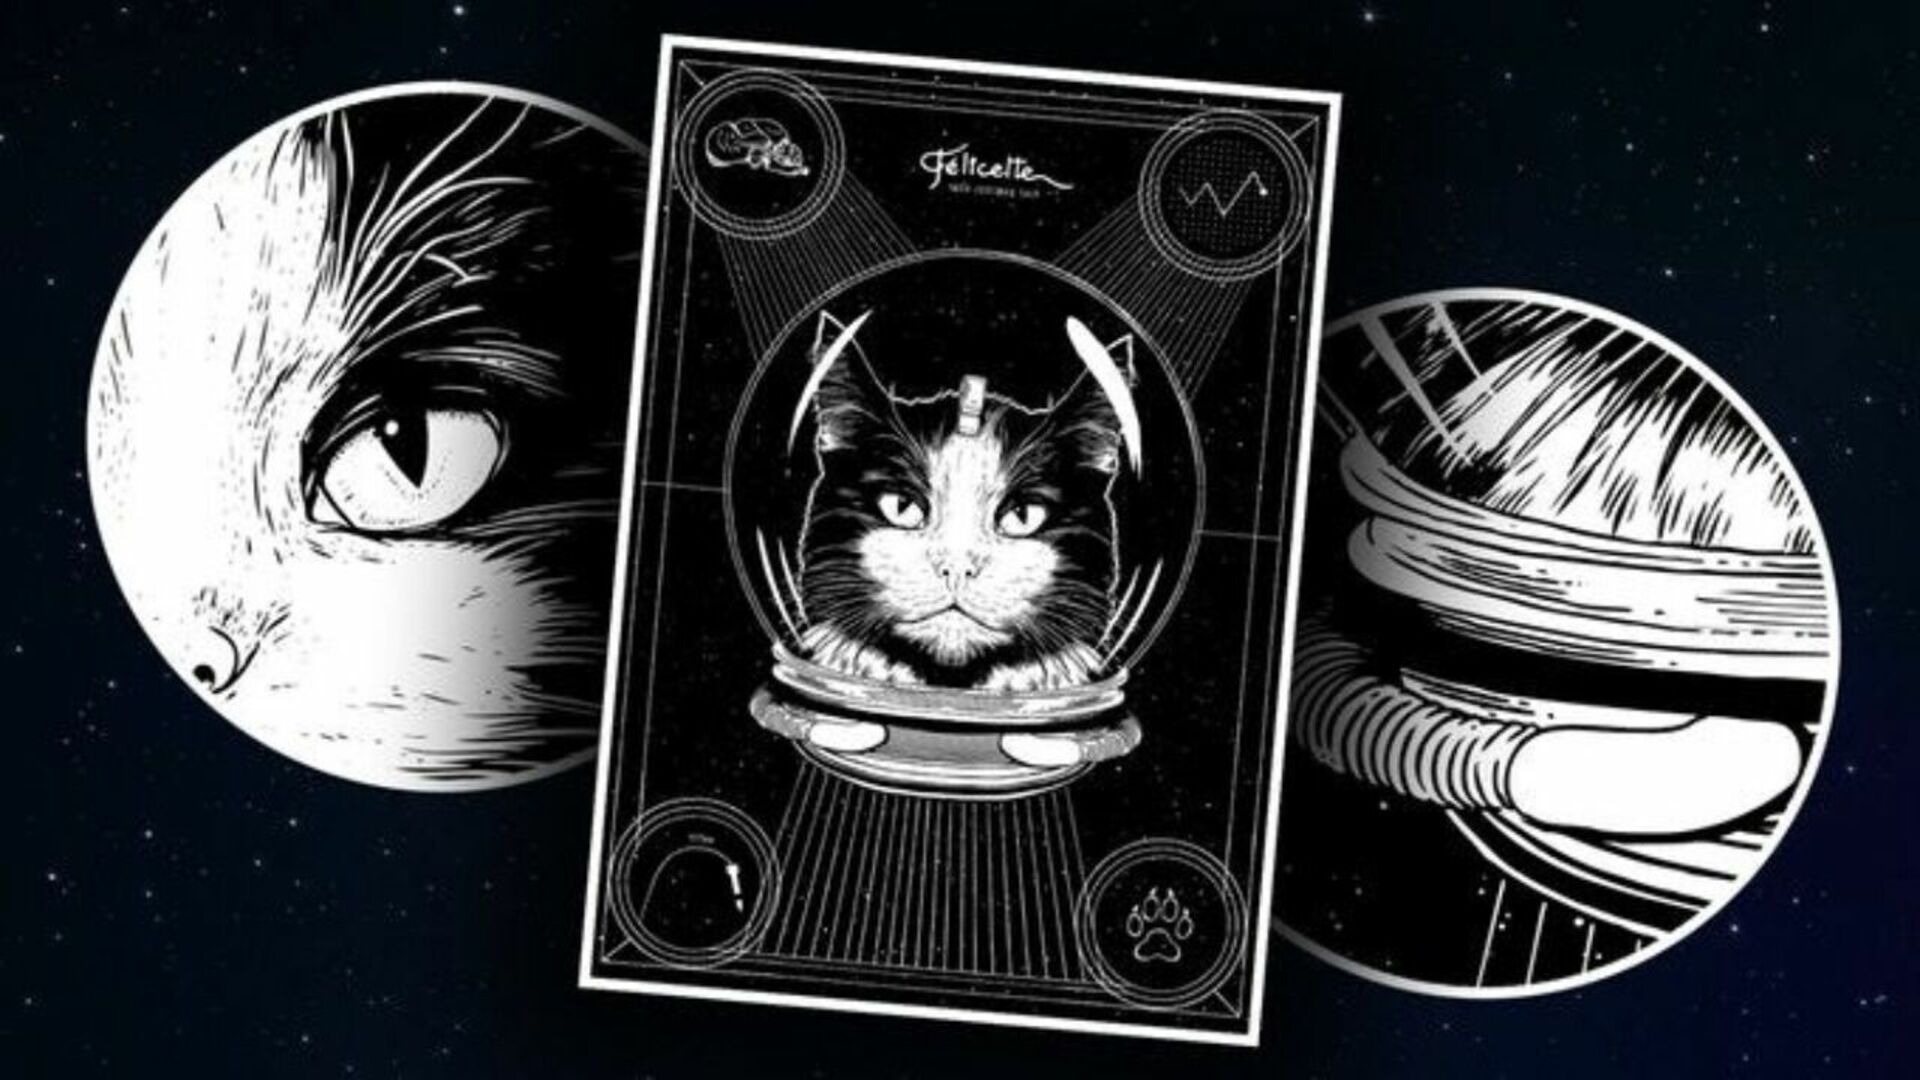 Астро кошка Фелисетт. Первая кошка космонавт Фелисетт. Фелисетт в космосе. Кот Фелисетт в космосе. 1 кошка в космосе